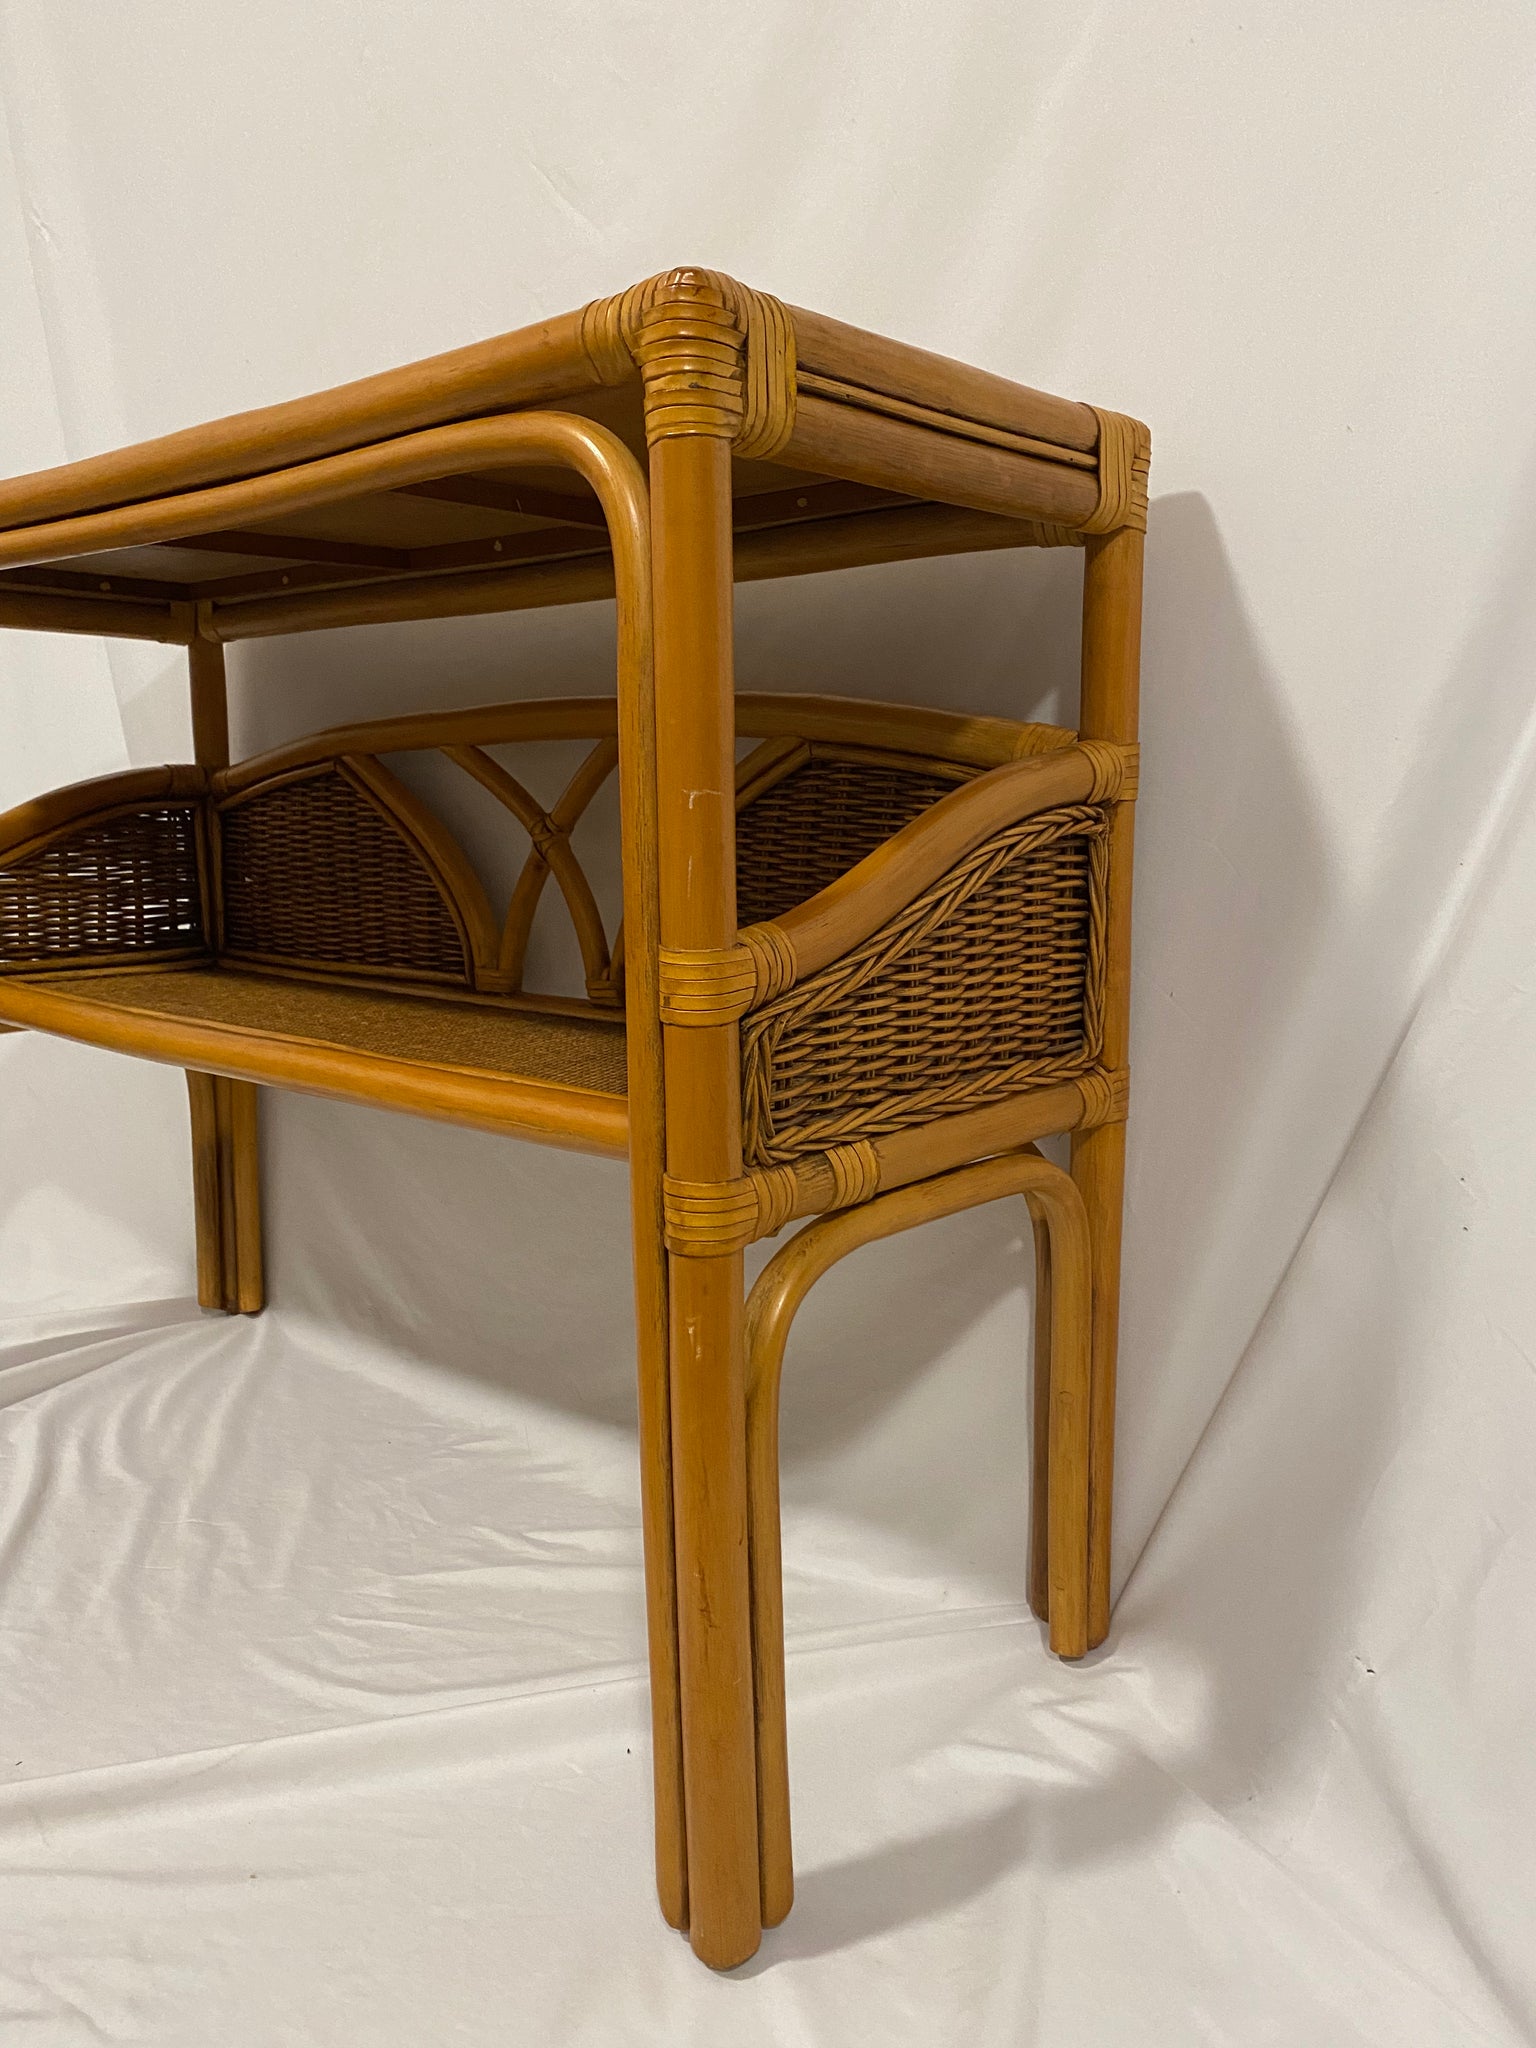 Bamboo & wicker console table desk